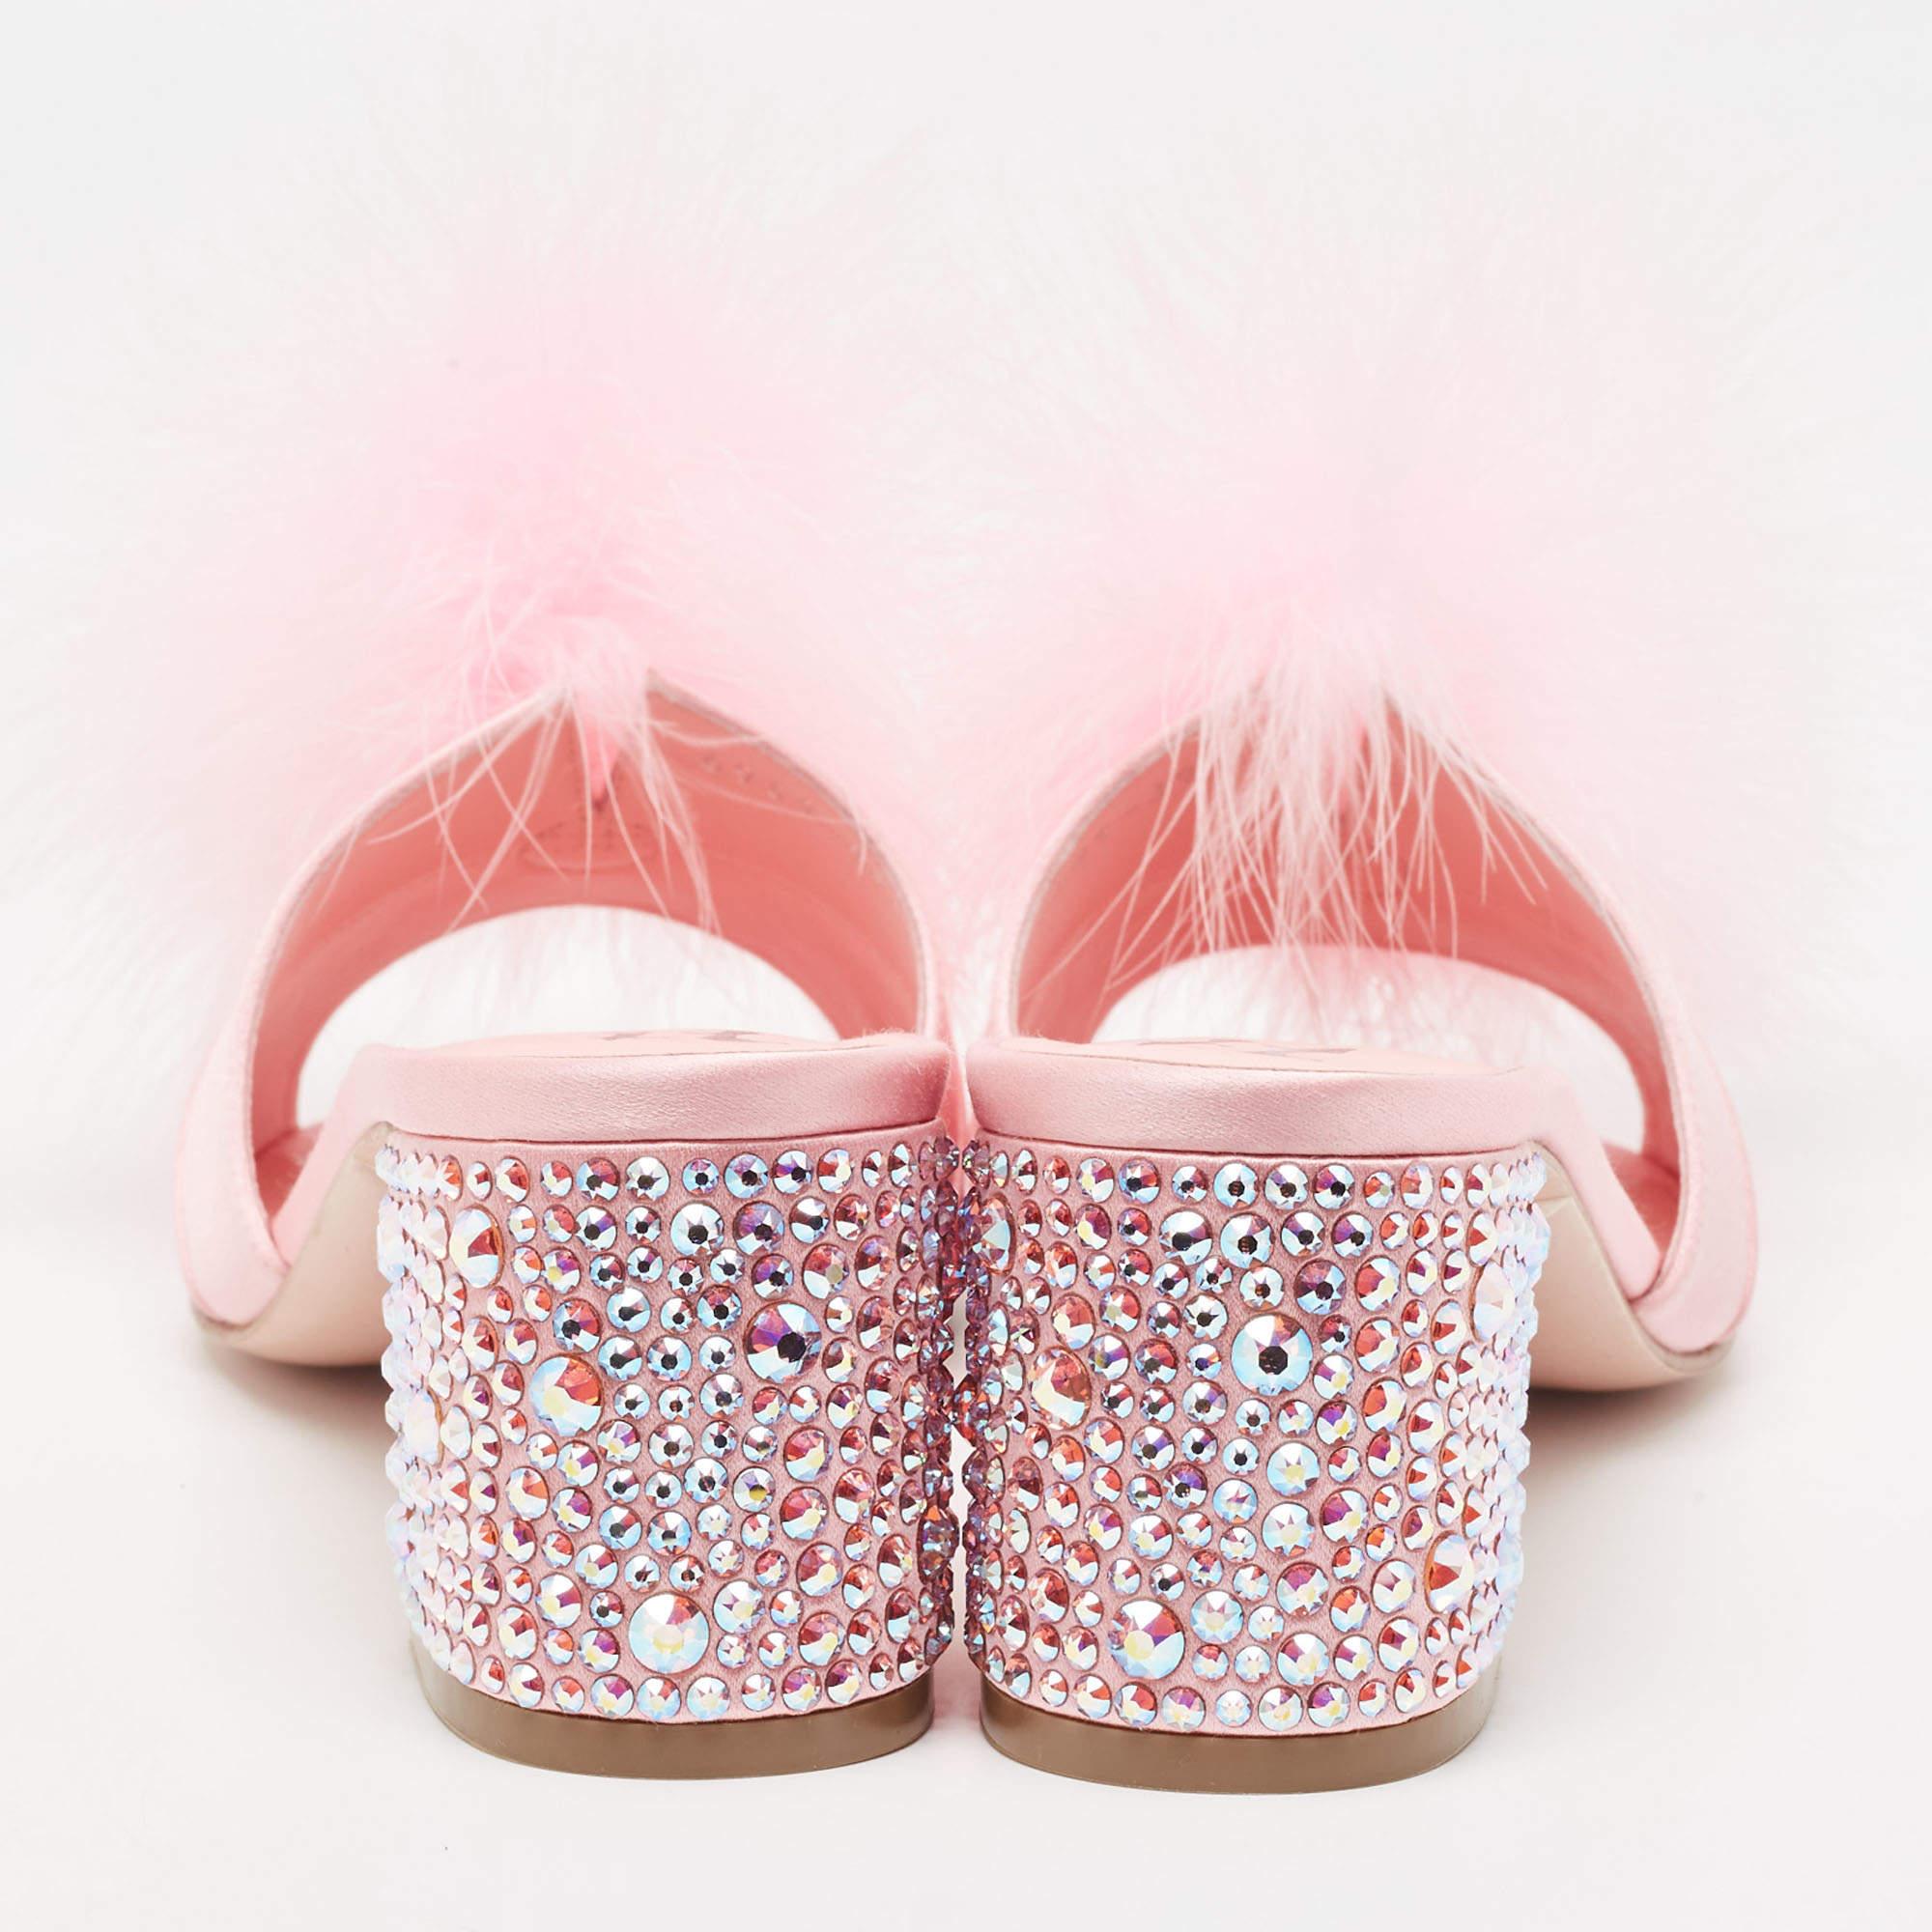 Women's Gina Pink Satin and Fur Cindy Crystal Embellished Heel Slide Sandals Size 39